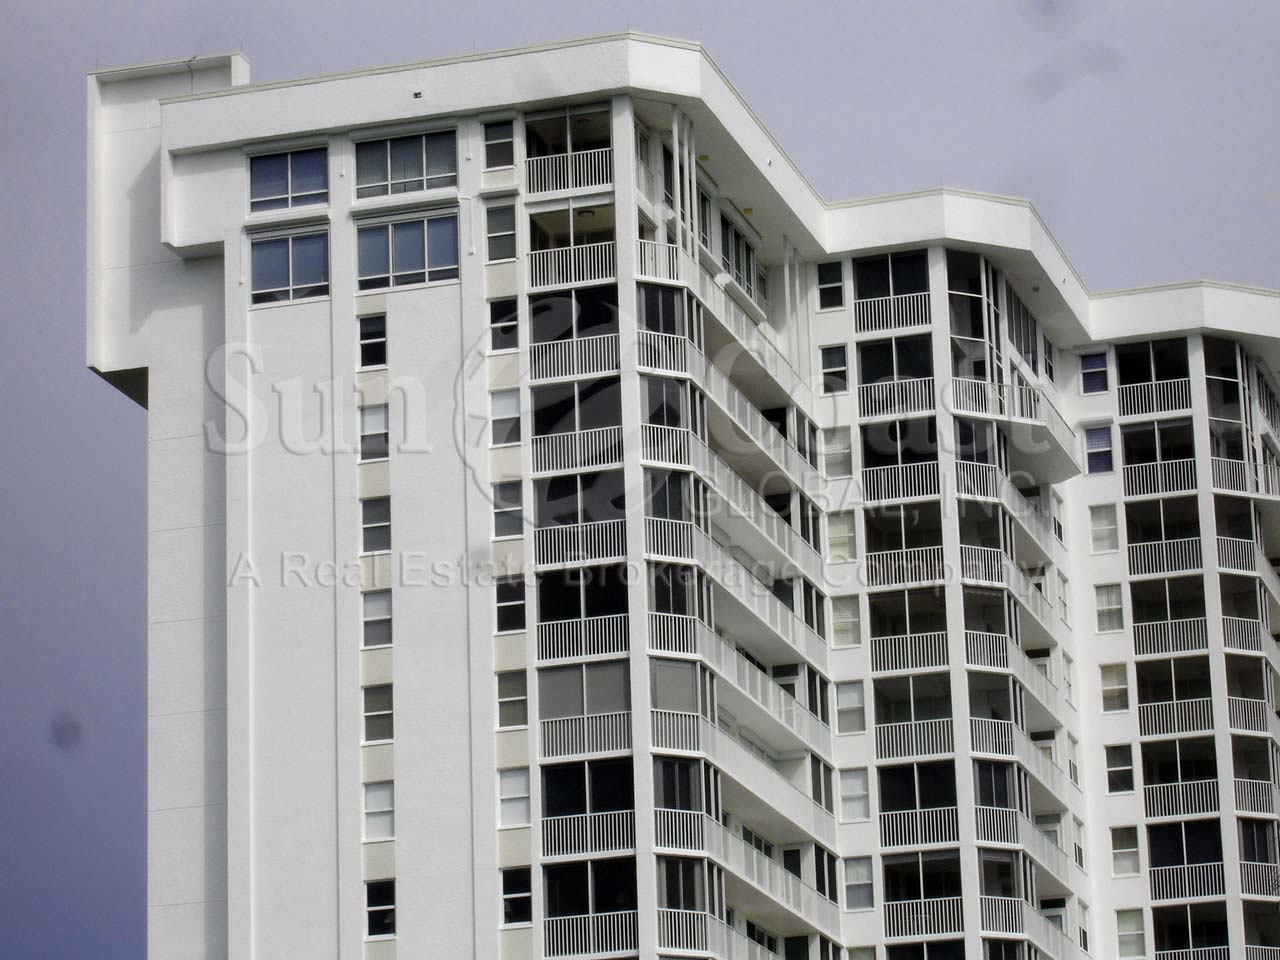 St Lucia Condominium Building with Lanais